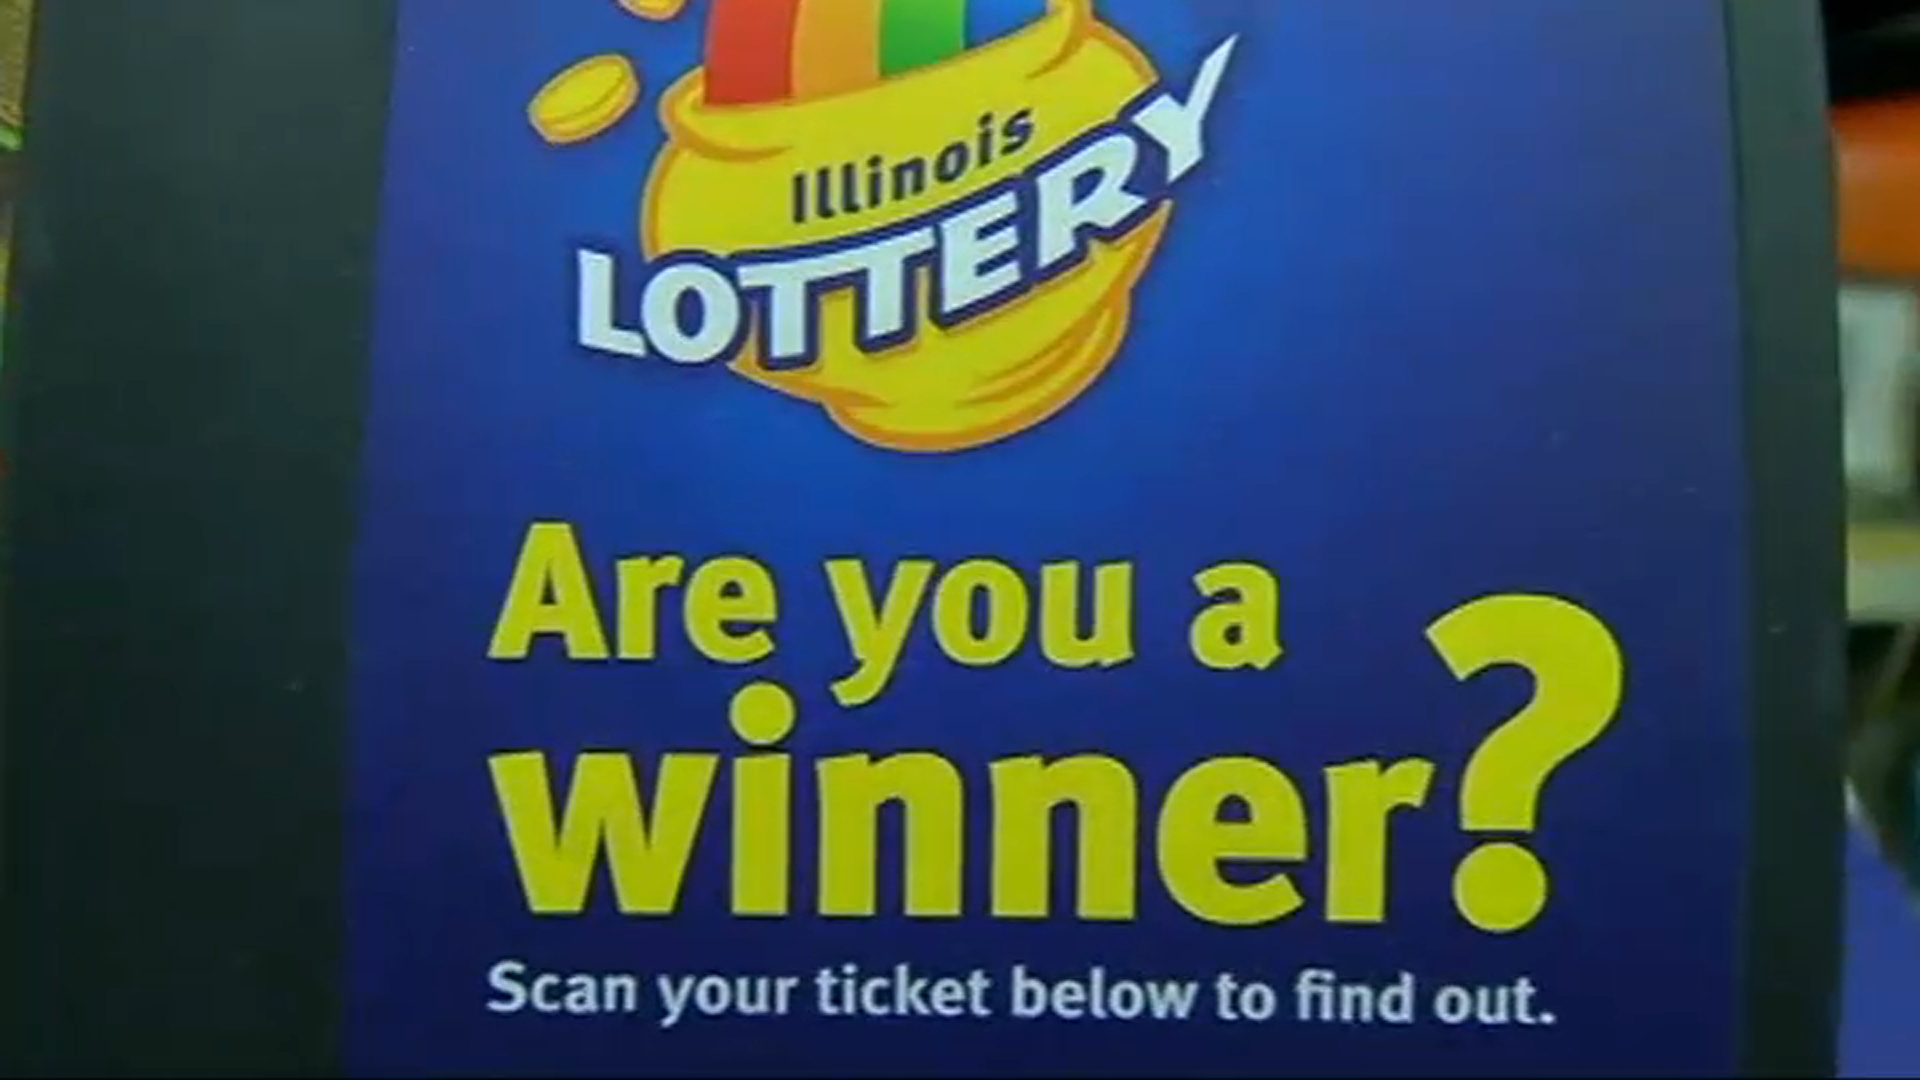 se vende billete de lotería ganador de $1 millón en los suburbios del noroeste